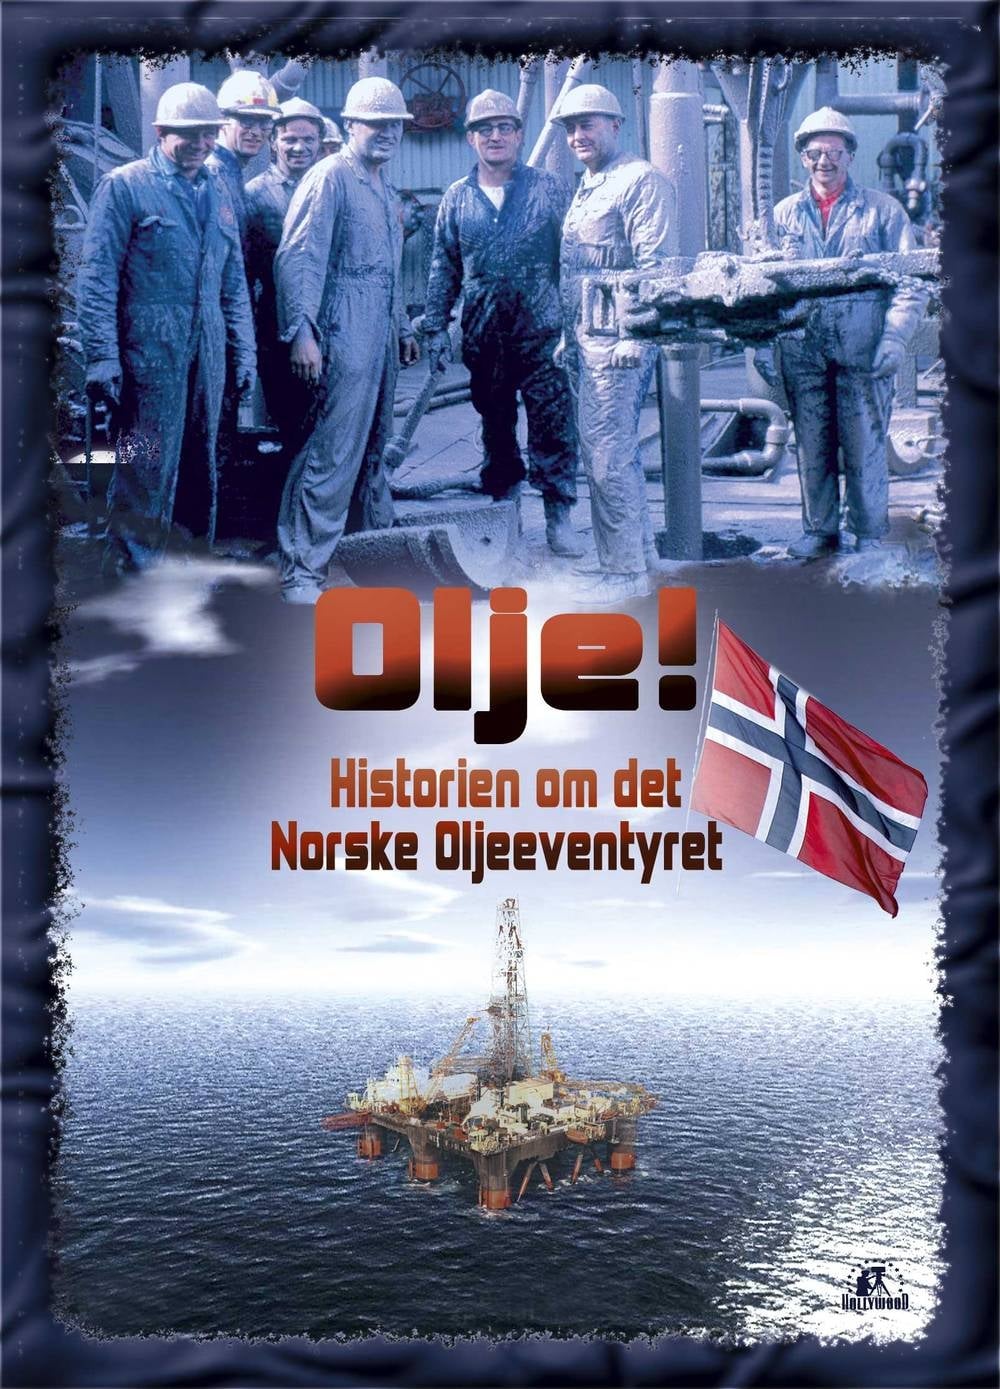 Olje - Historien om det norske oljeeventyret TV Shows About Oil Industry